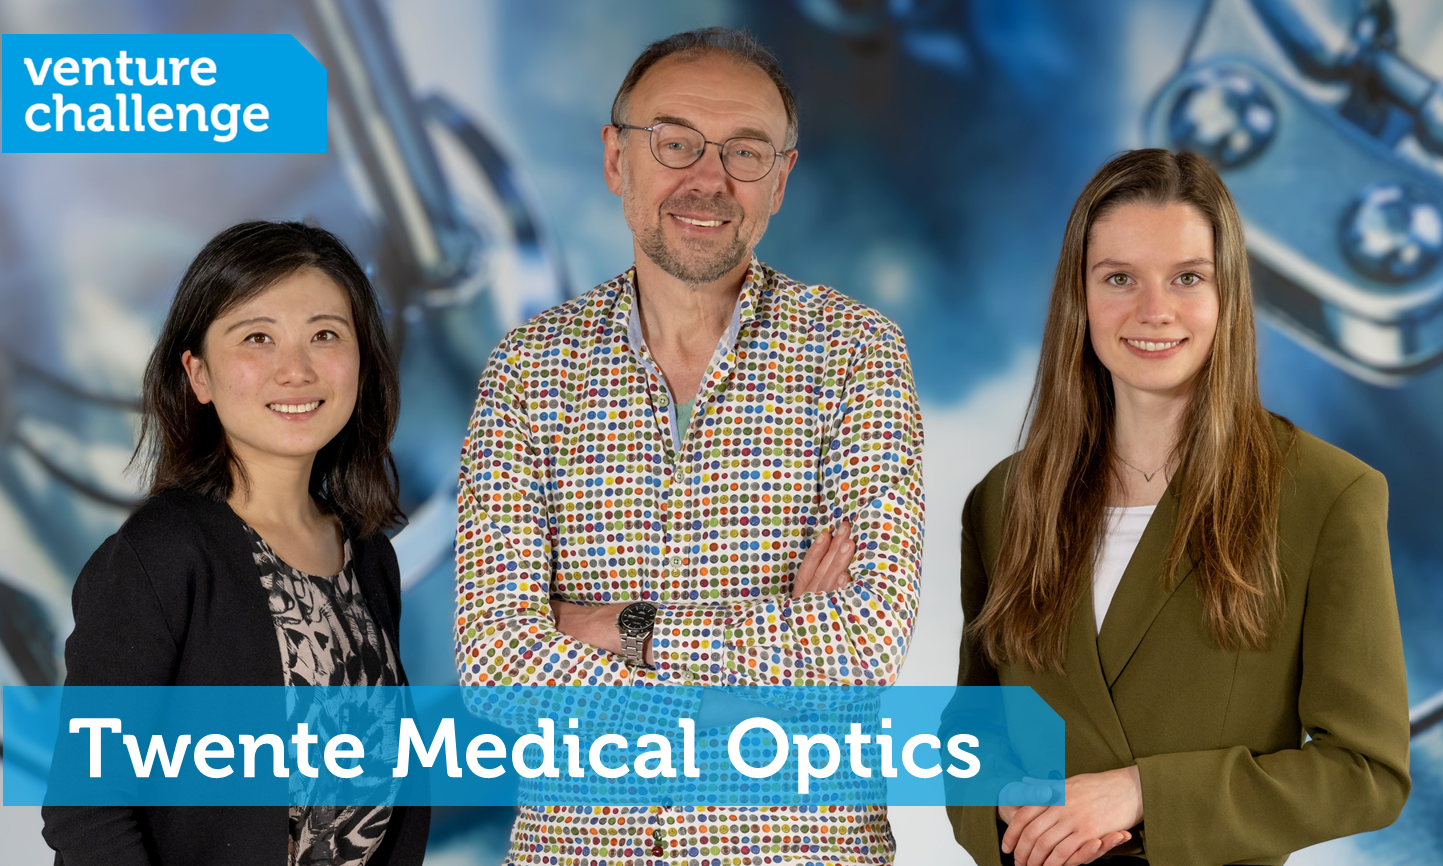 Twente Medical Optics